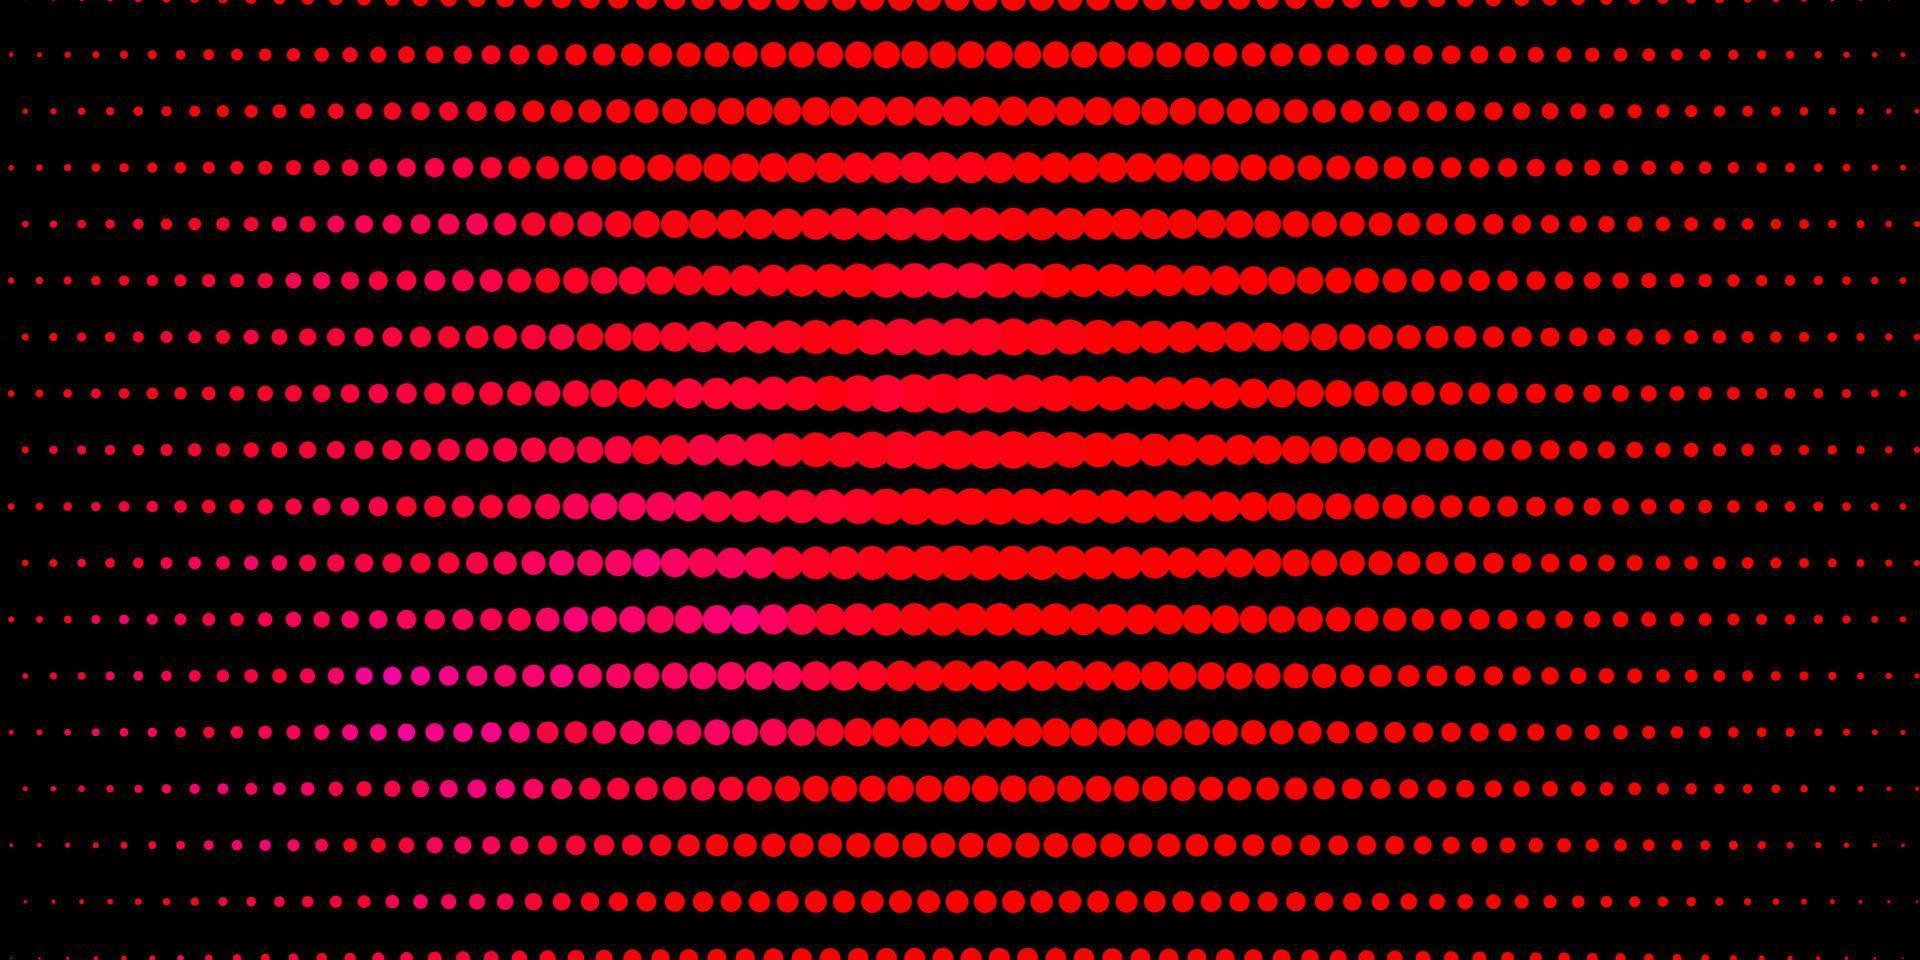 padrão de vetor rosa e vermelho escuro com esferas.